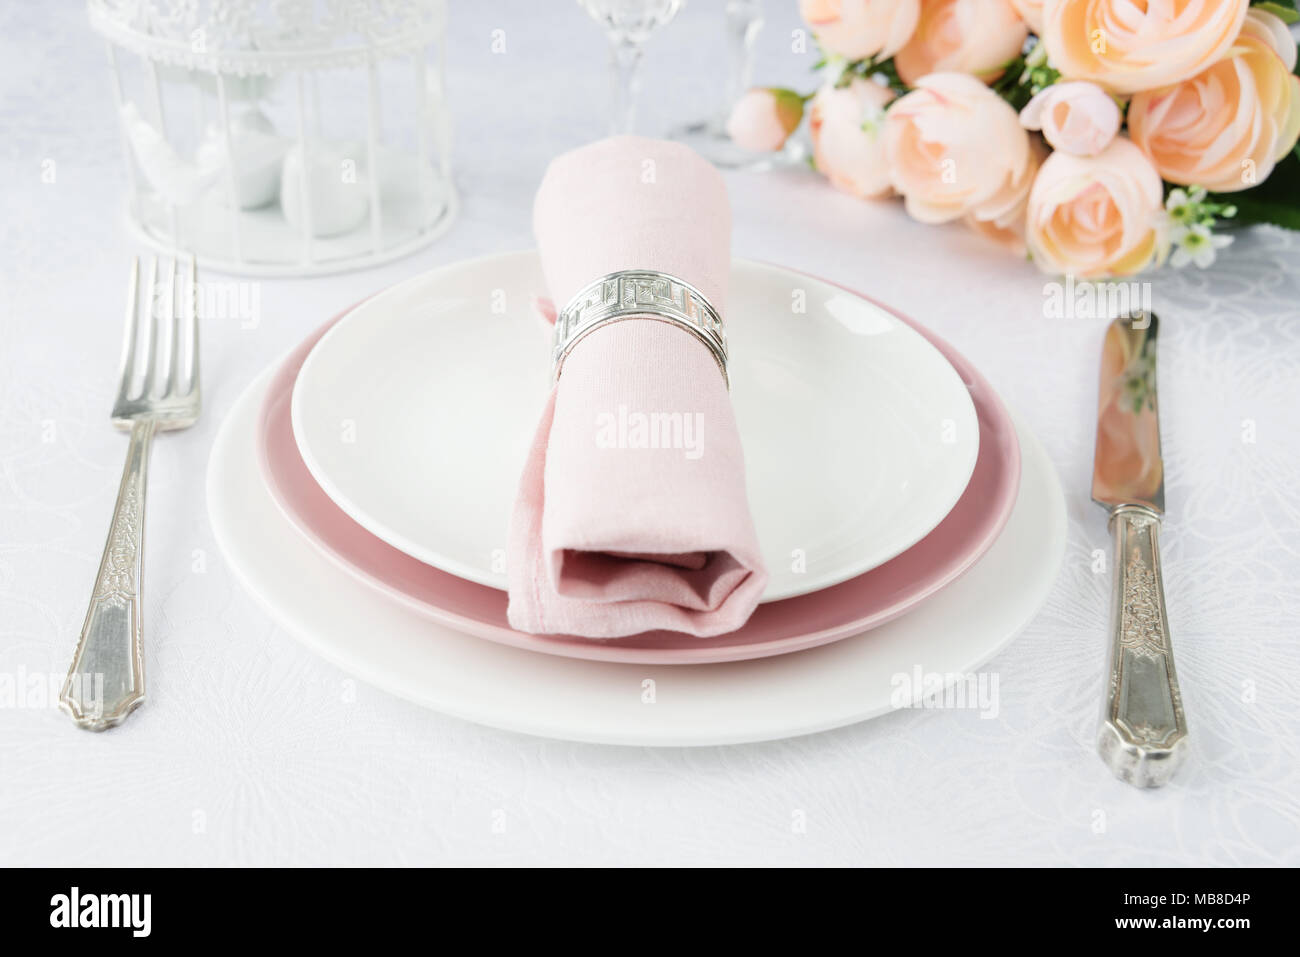 Tabla bellamente decorada con blanco y rosa, platos, vasos, cubiertos, servilleta rosa y flores sobre manteles de lujo Foto de stock